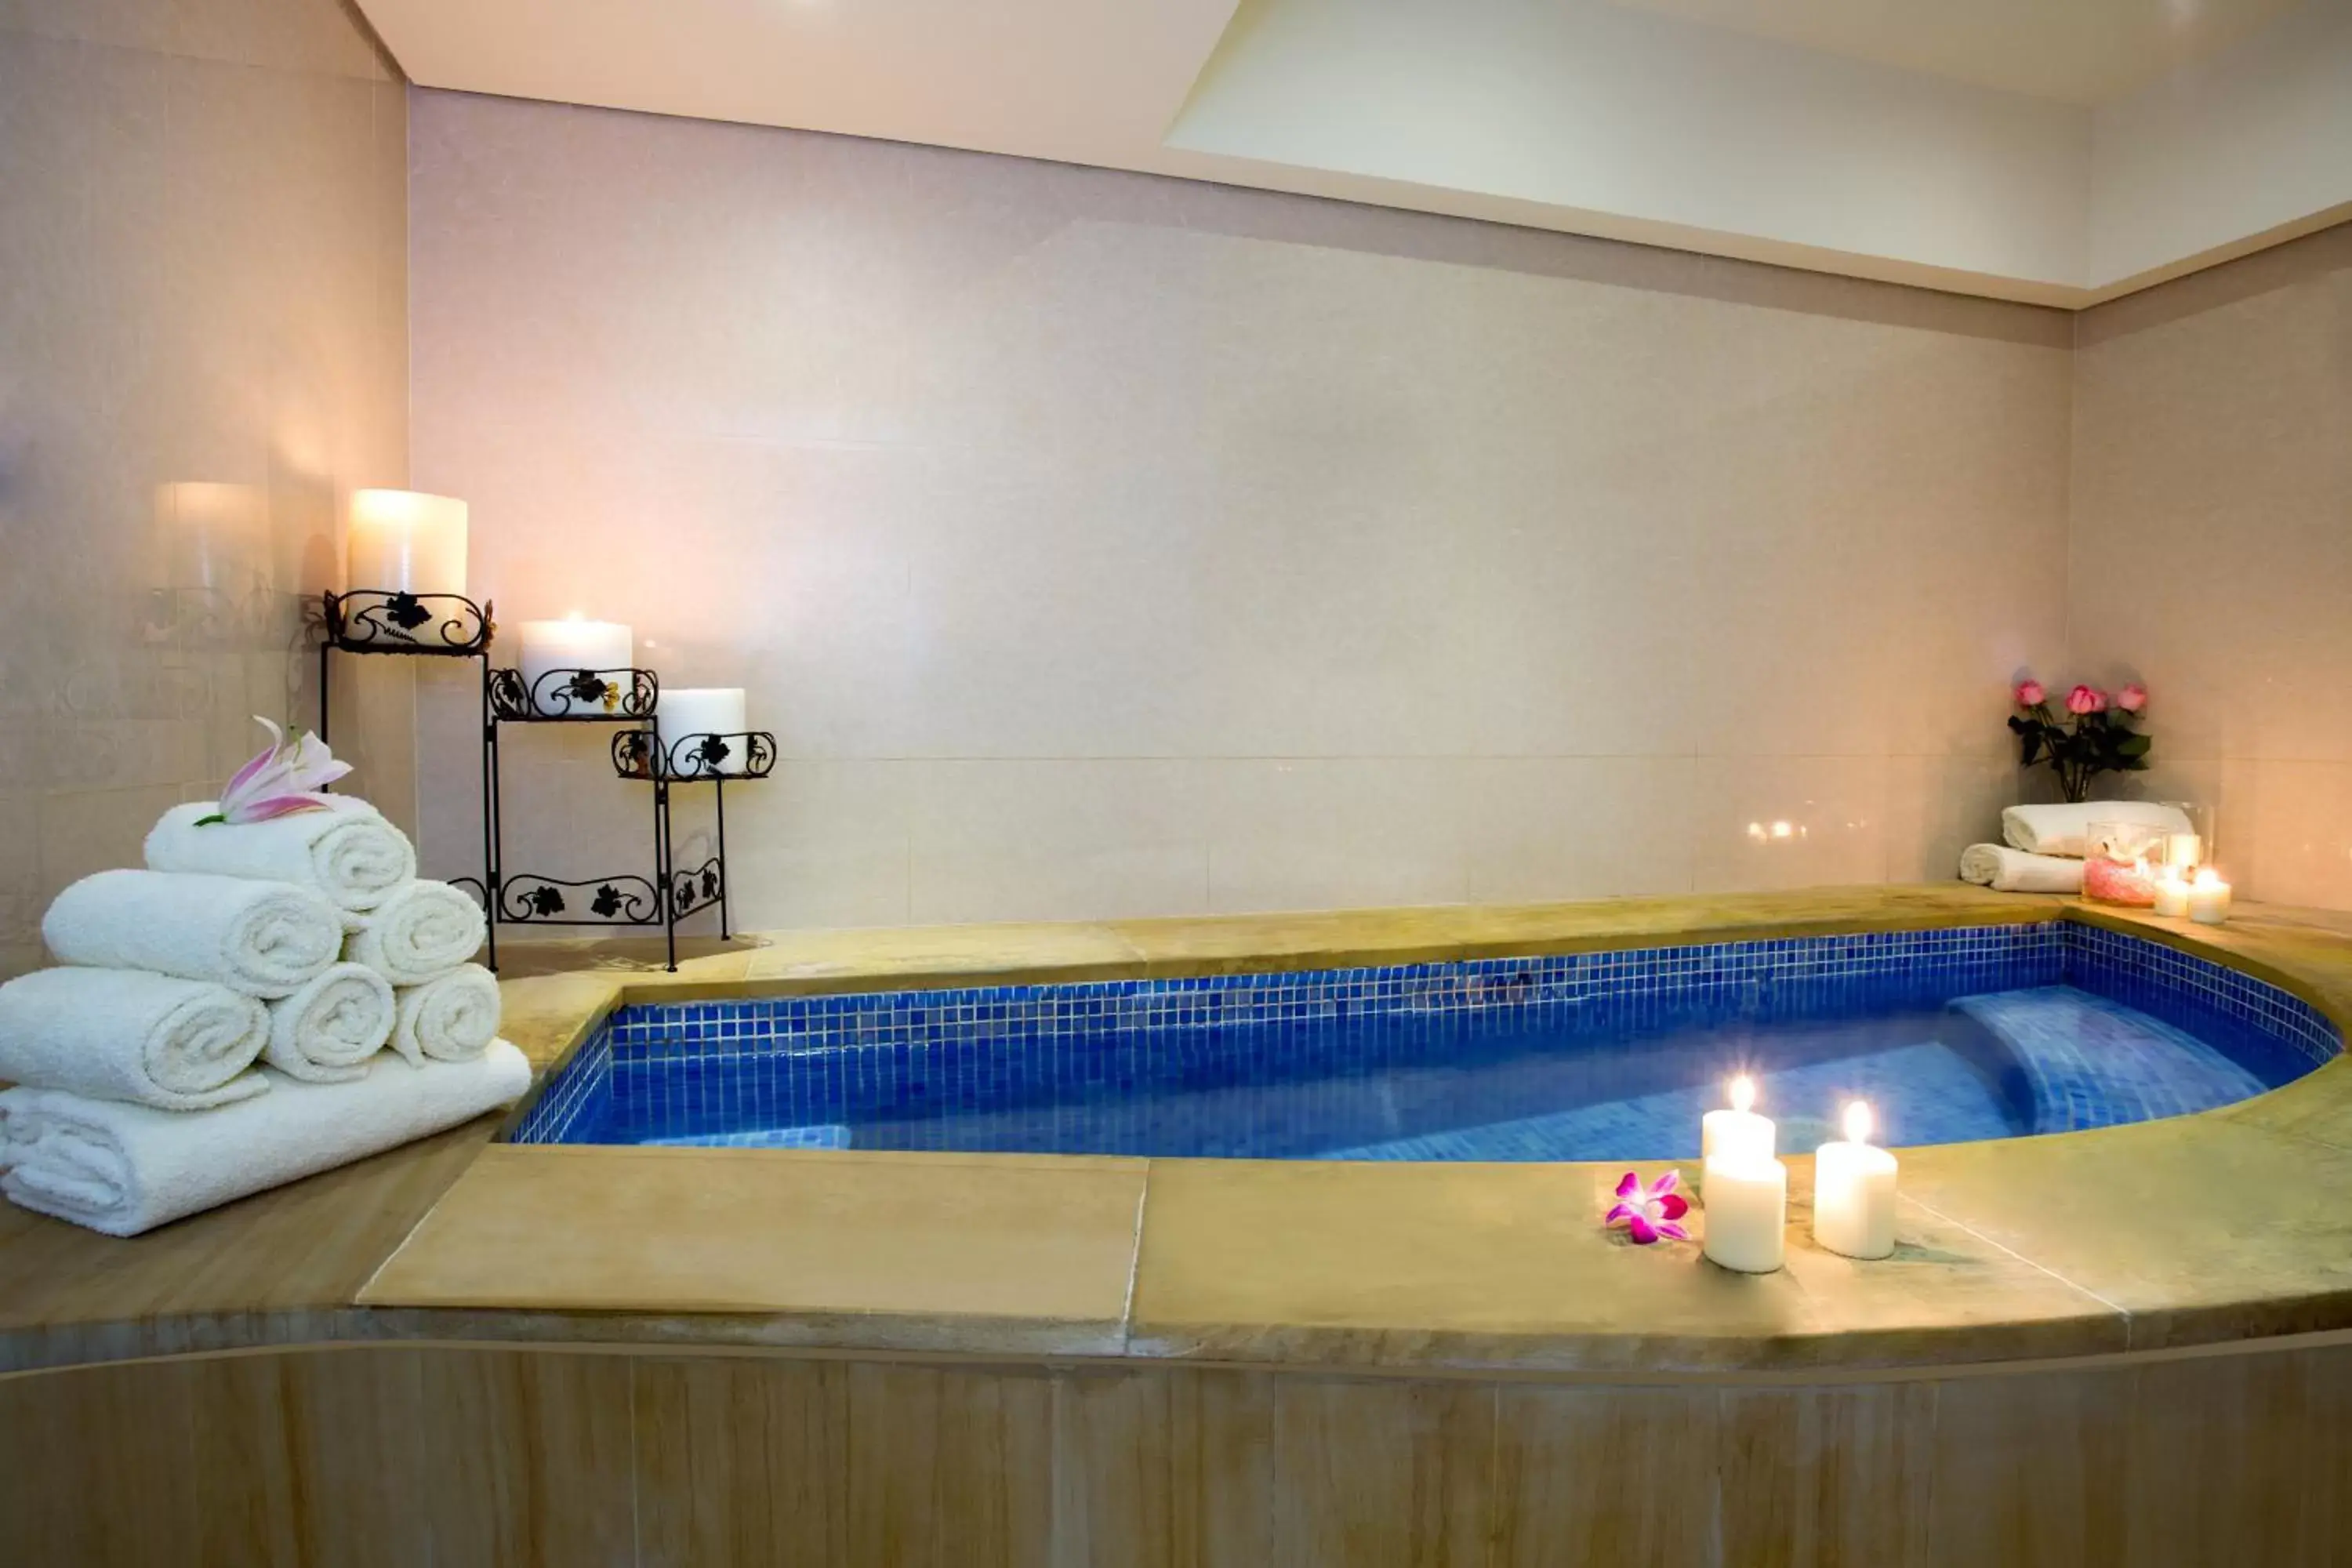 Hot Tub, Bathroom in Park Regis Kris Kin Hotel